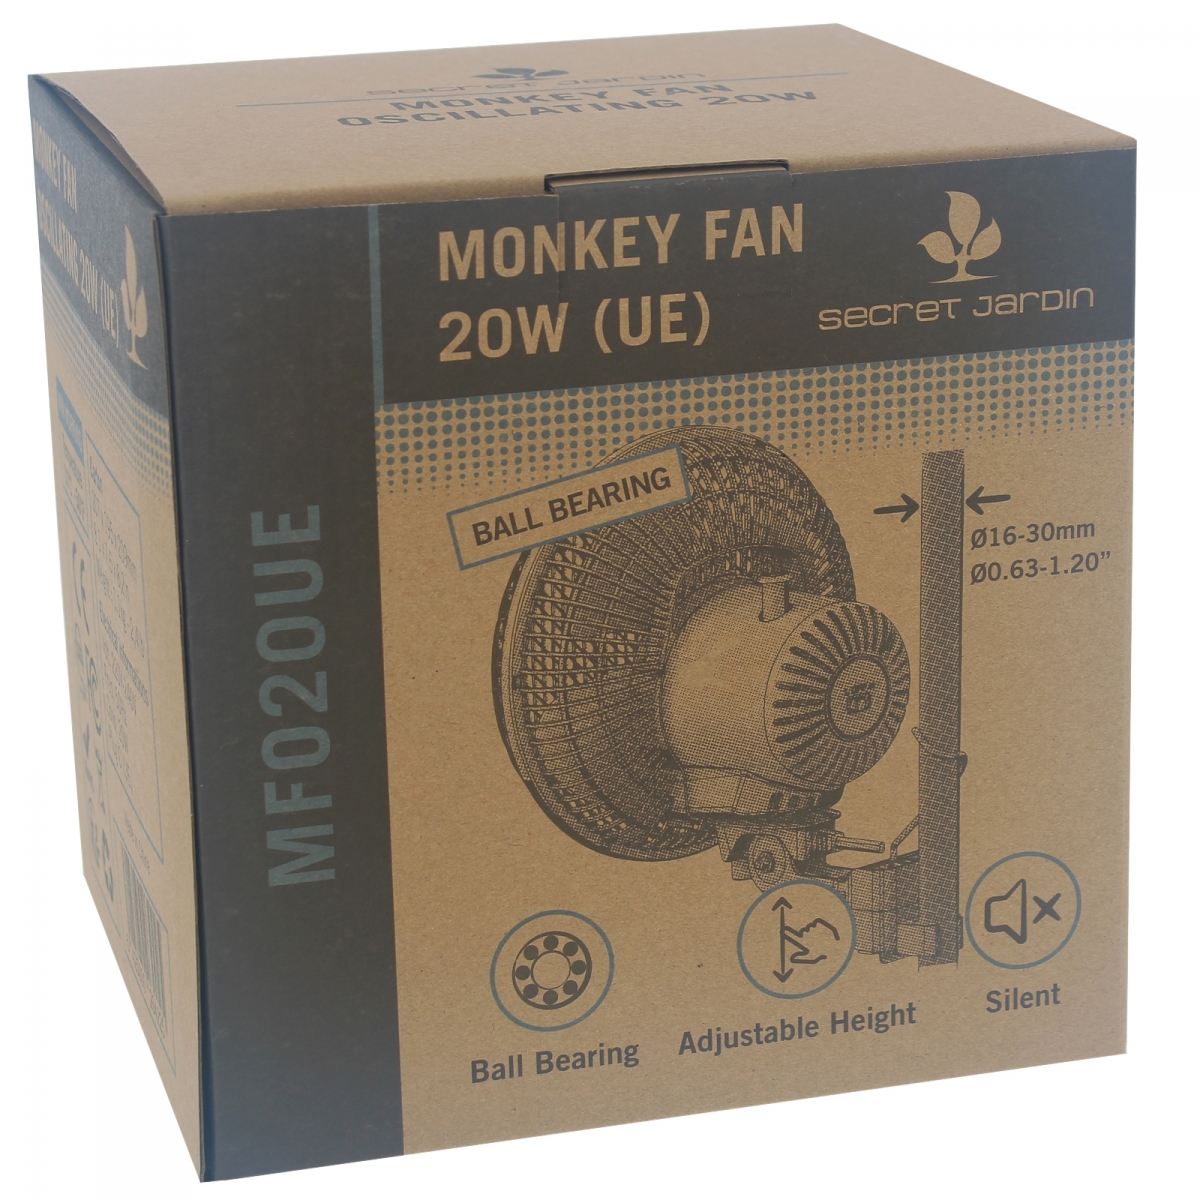 Ventilateur Monkey Fan 13w pas cher chez culture indoor,votre growshop